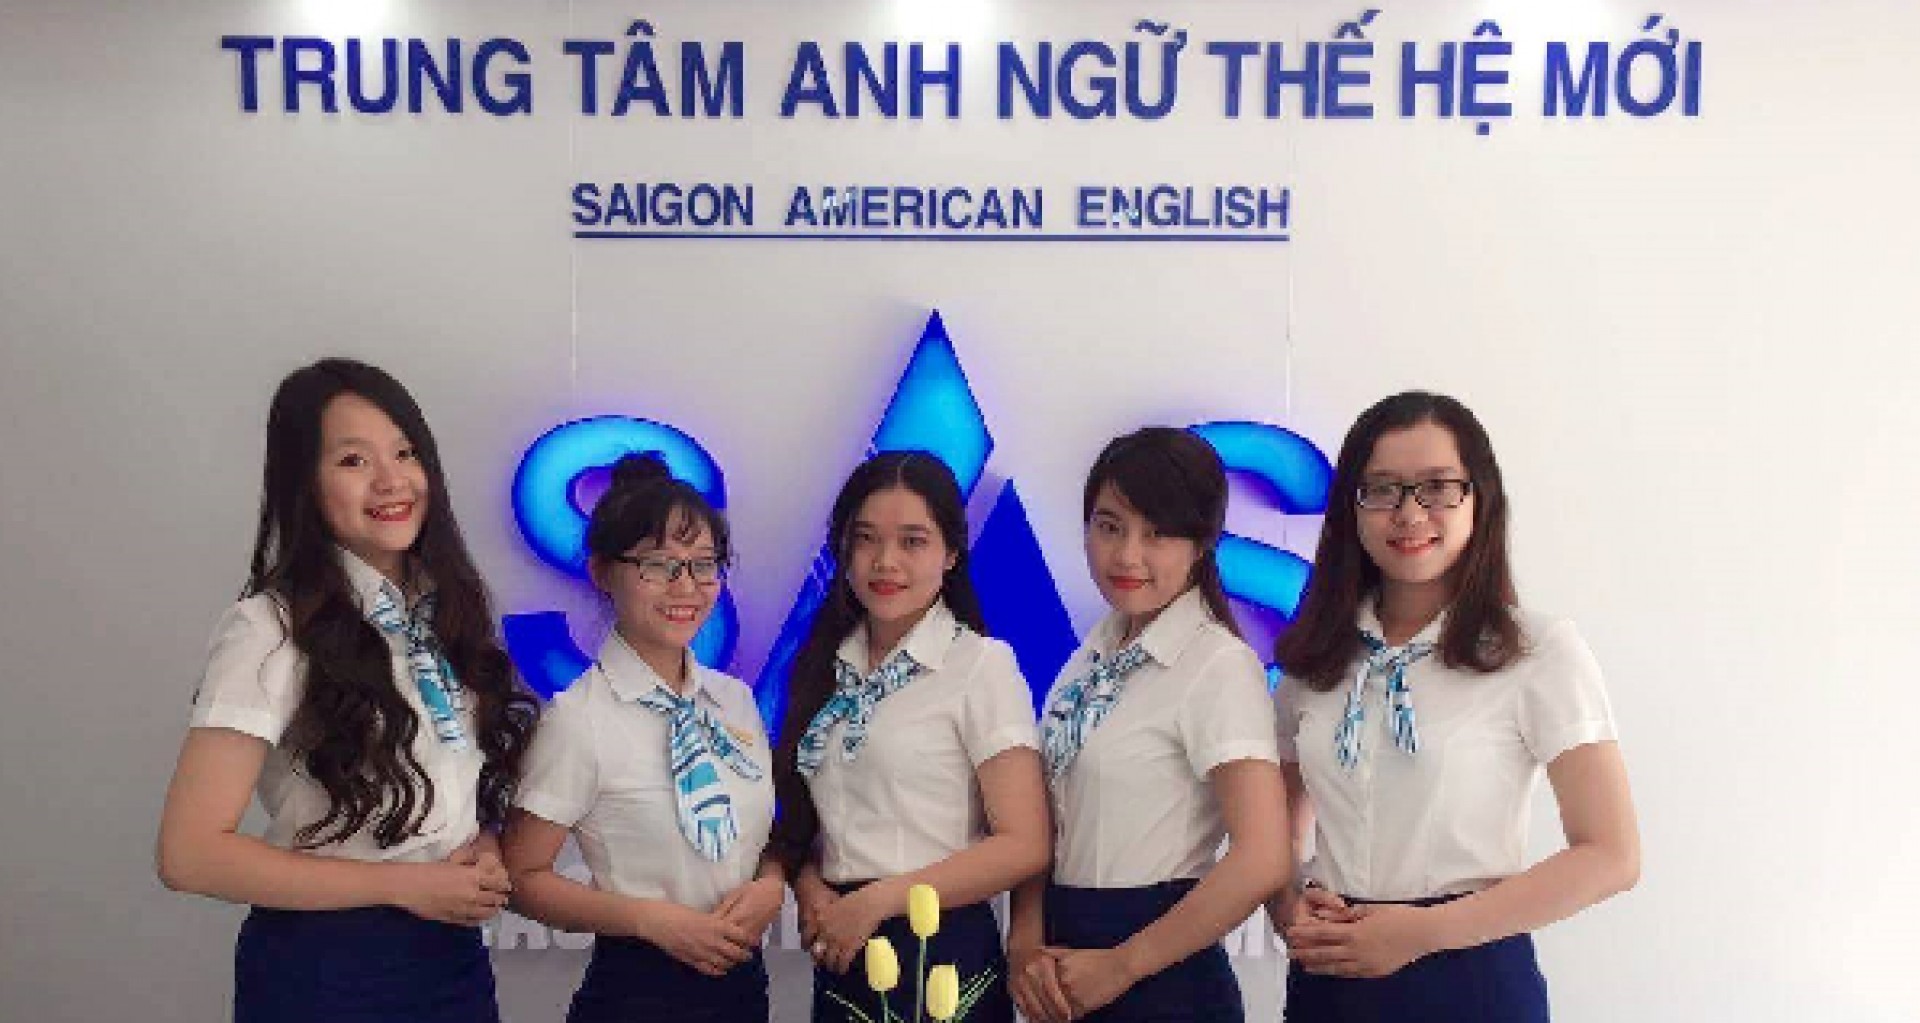 Náo nức nhận voucher giảm giá 100.000đ cùng Saigon American English!